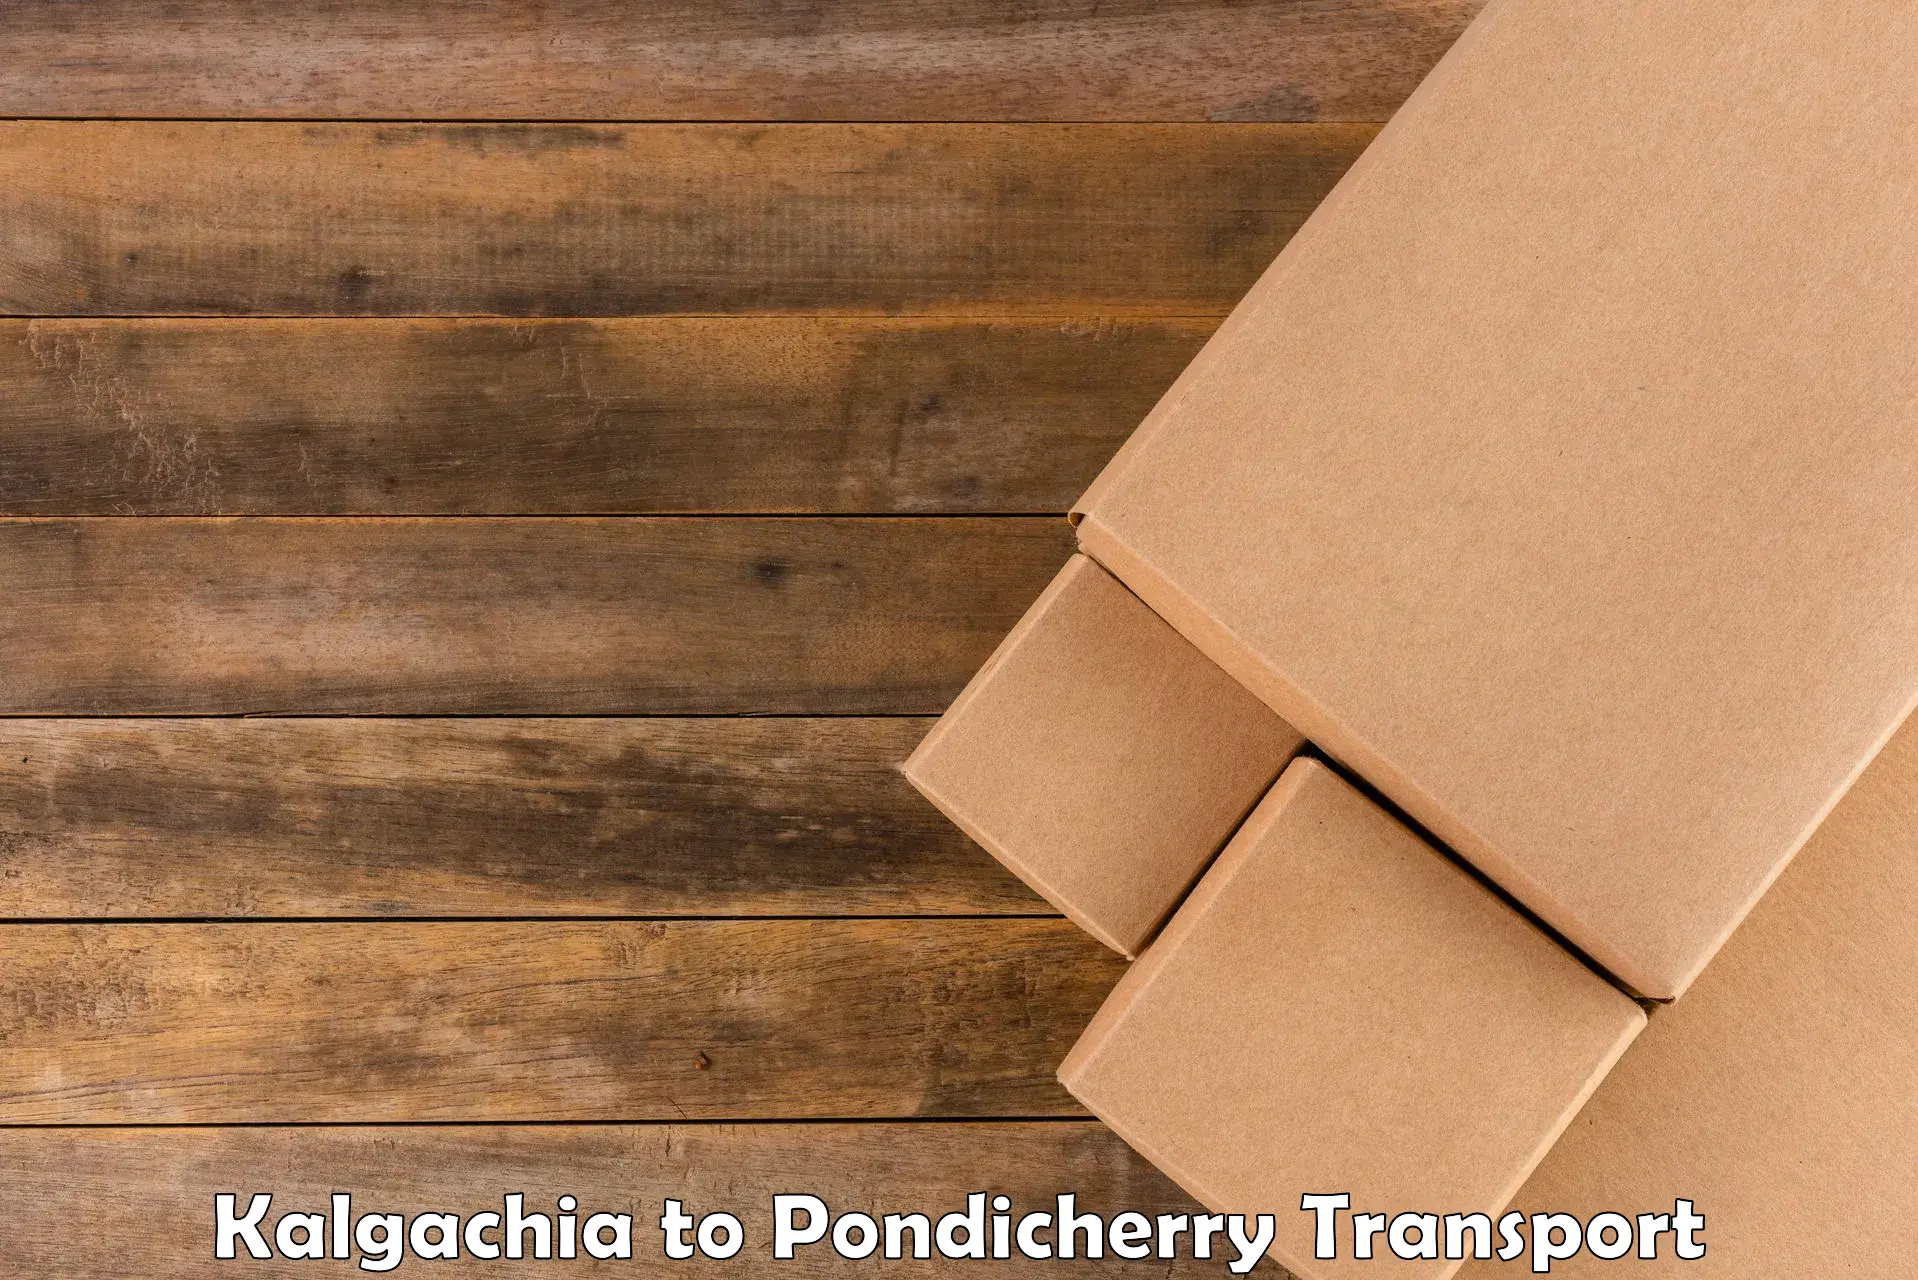 Container transportation services Kalgachia to Pondicherry